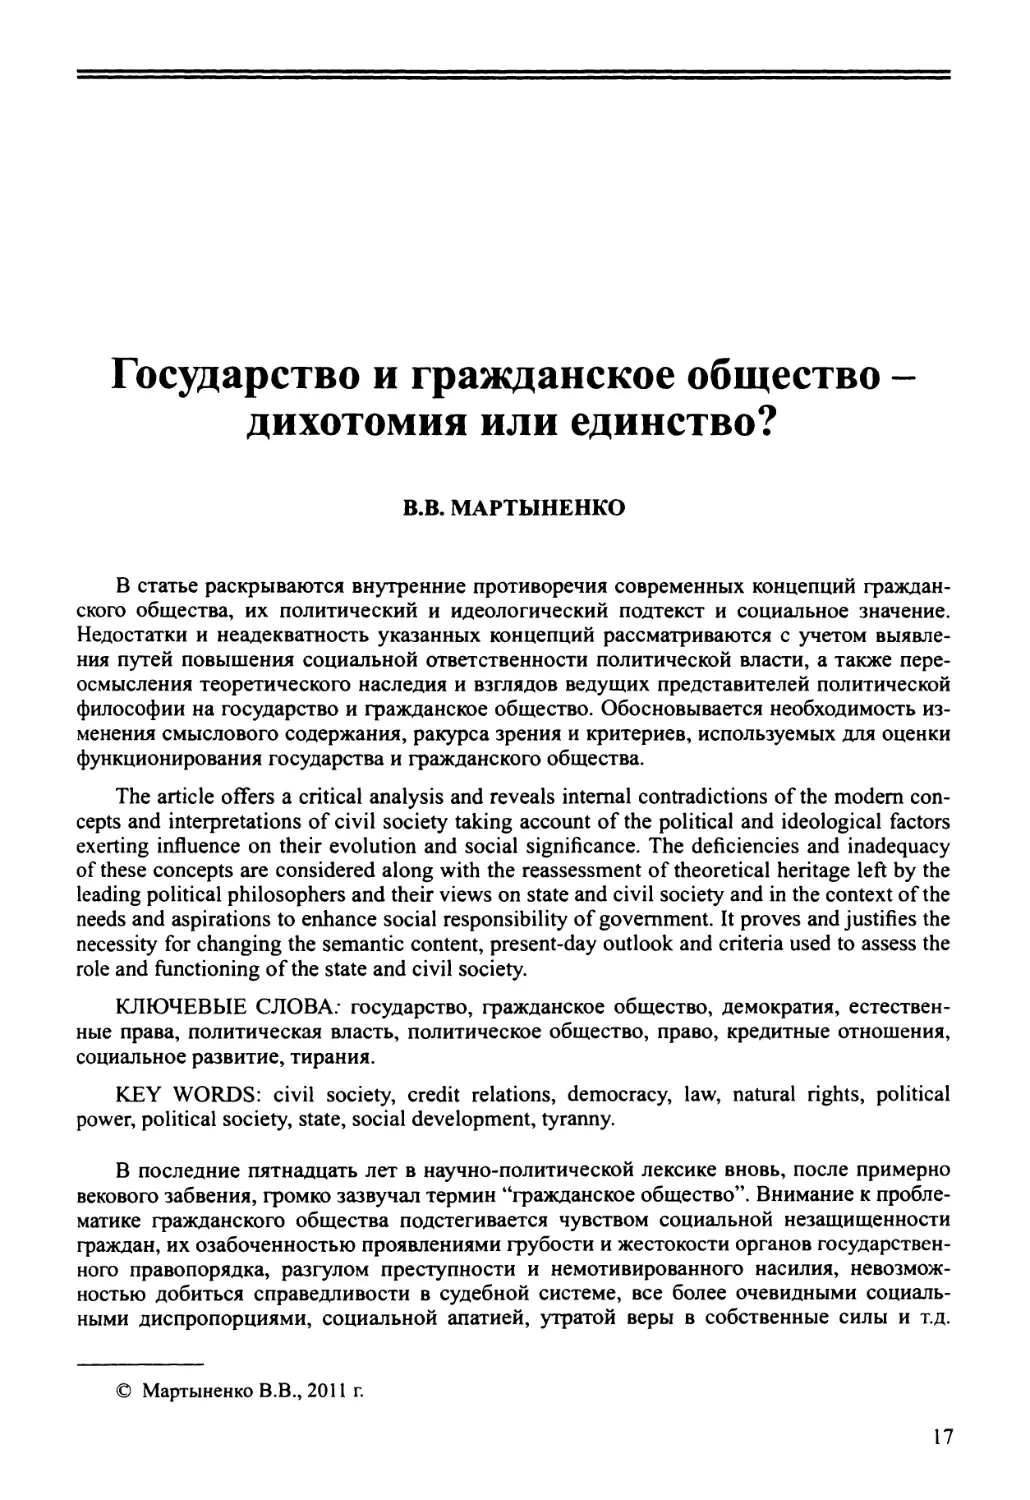 В.В. Мартыненко - Государство и гражданское общество - дихотомия или единство